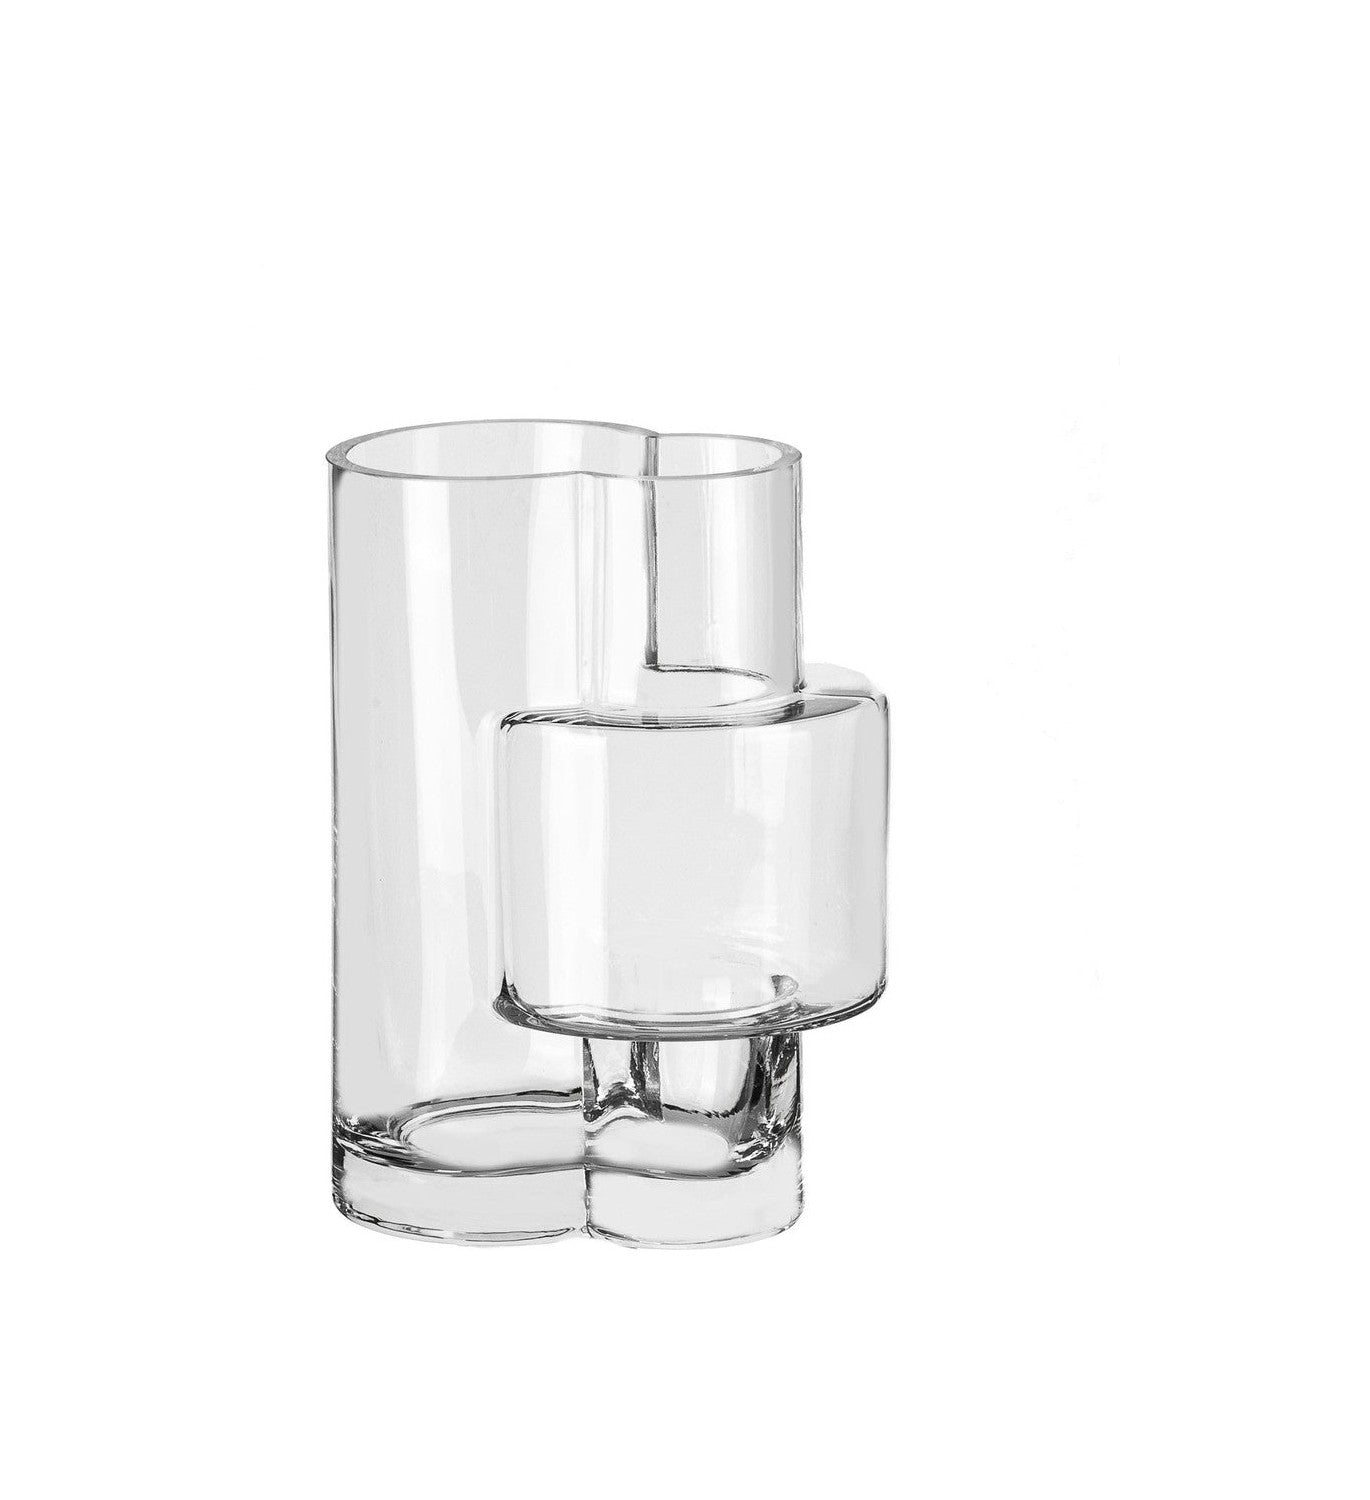 Konstruktivistický styl moderní vázy, nejvyšší design, Fusio 25 Clear Glass